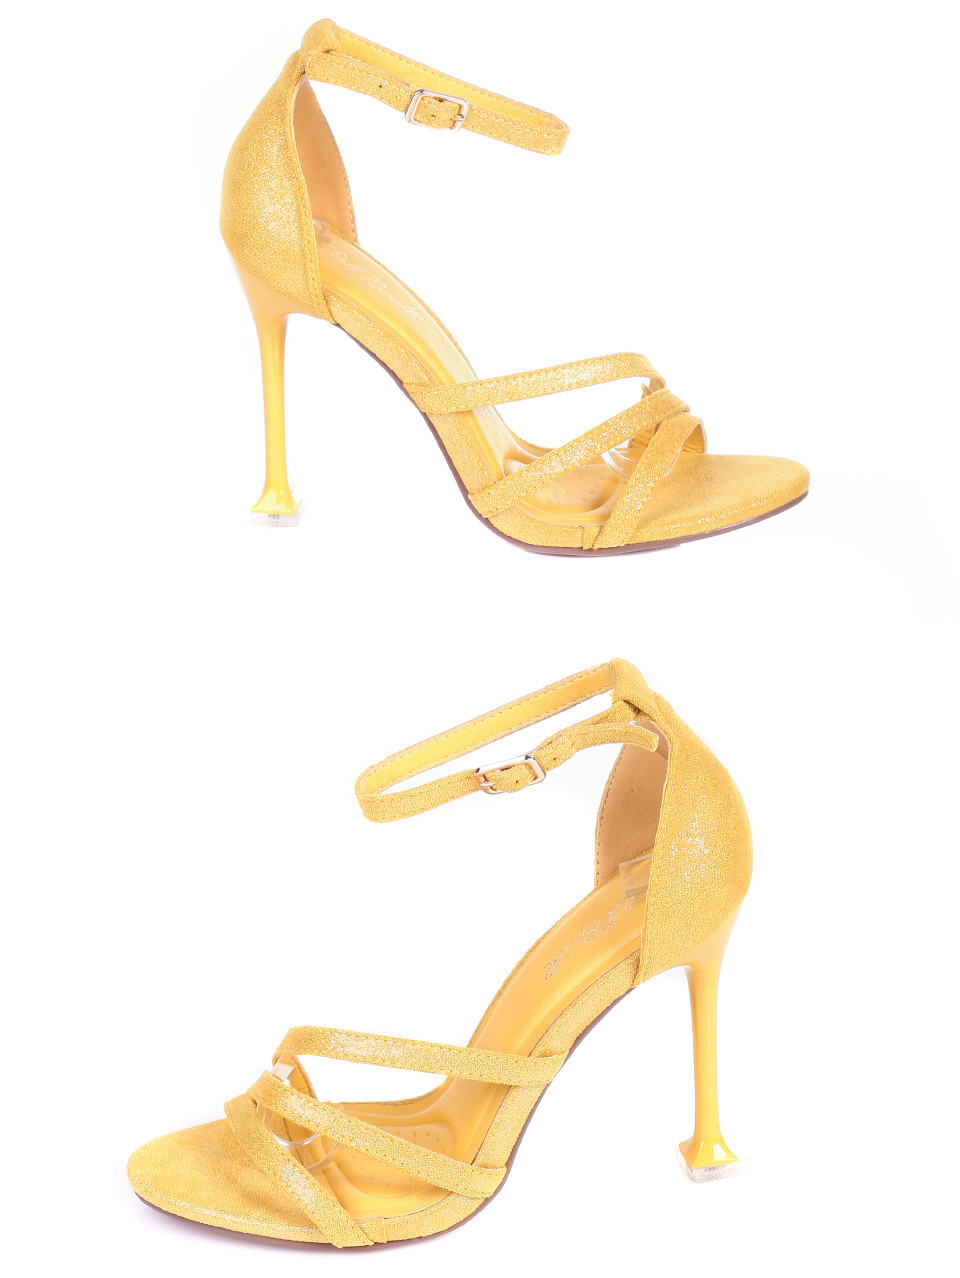 Елегантни дамски сандали на ток 4M-21019 yellow